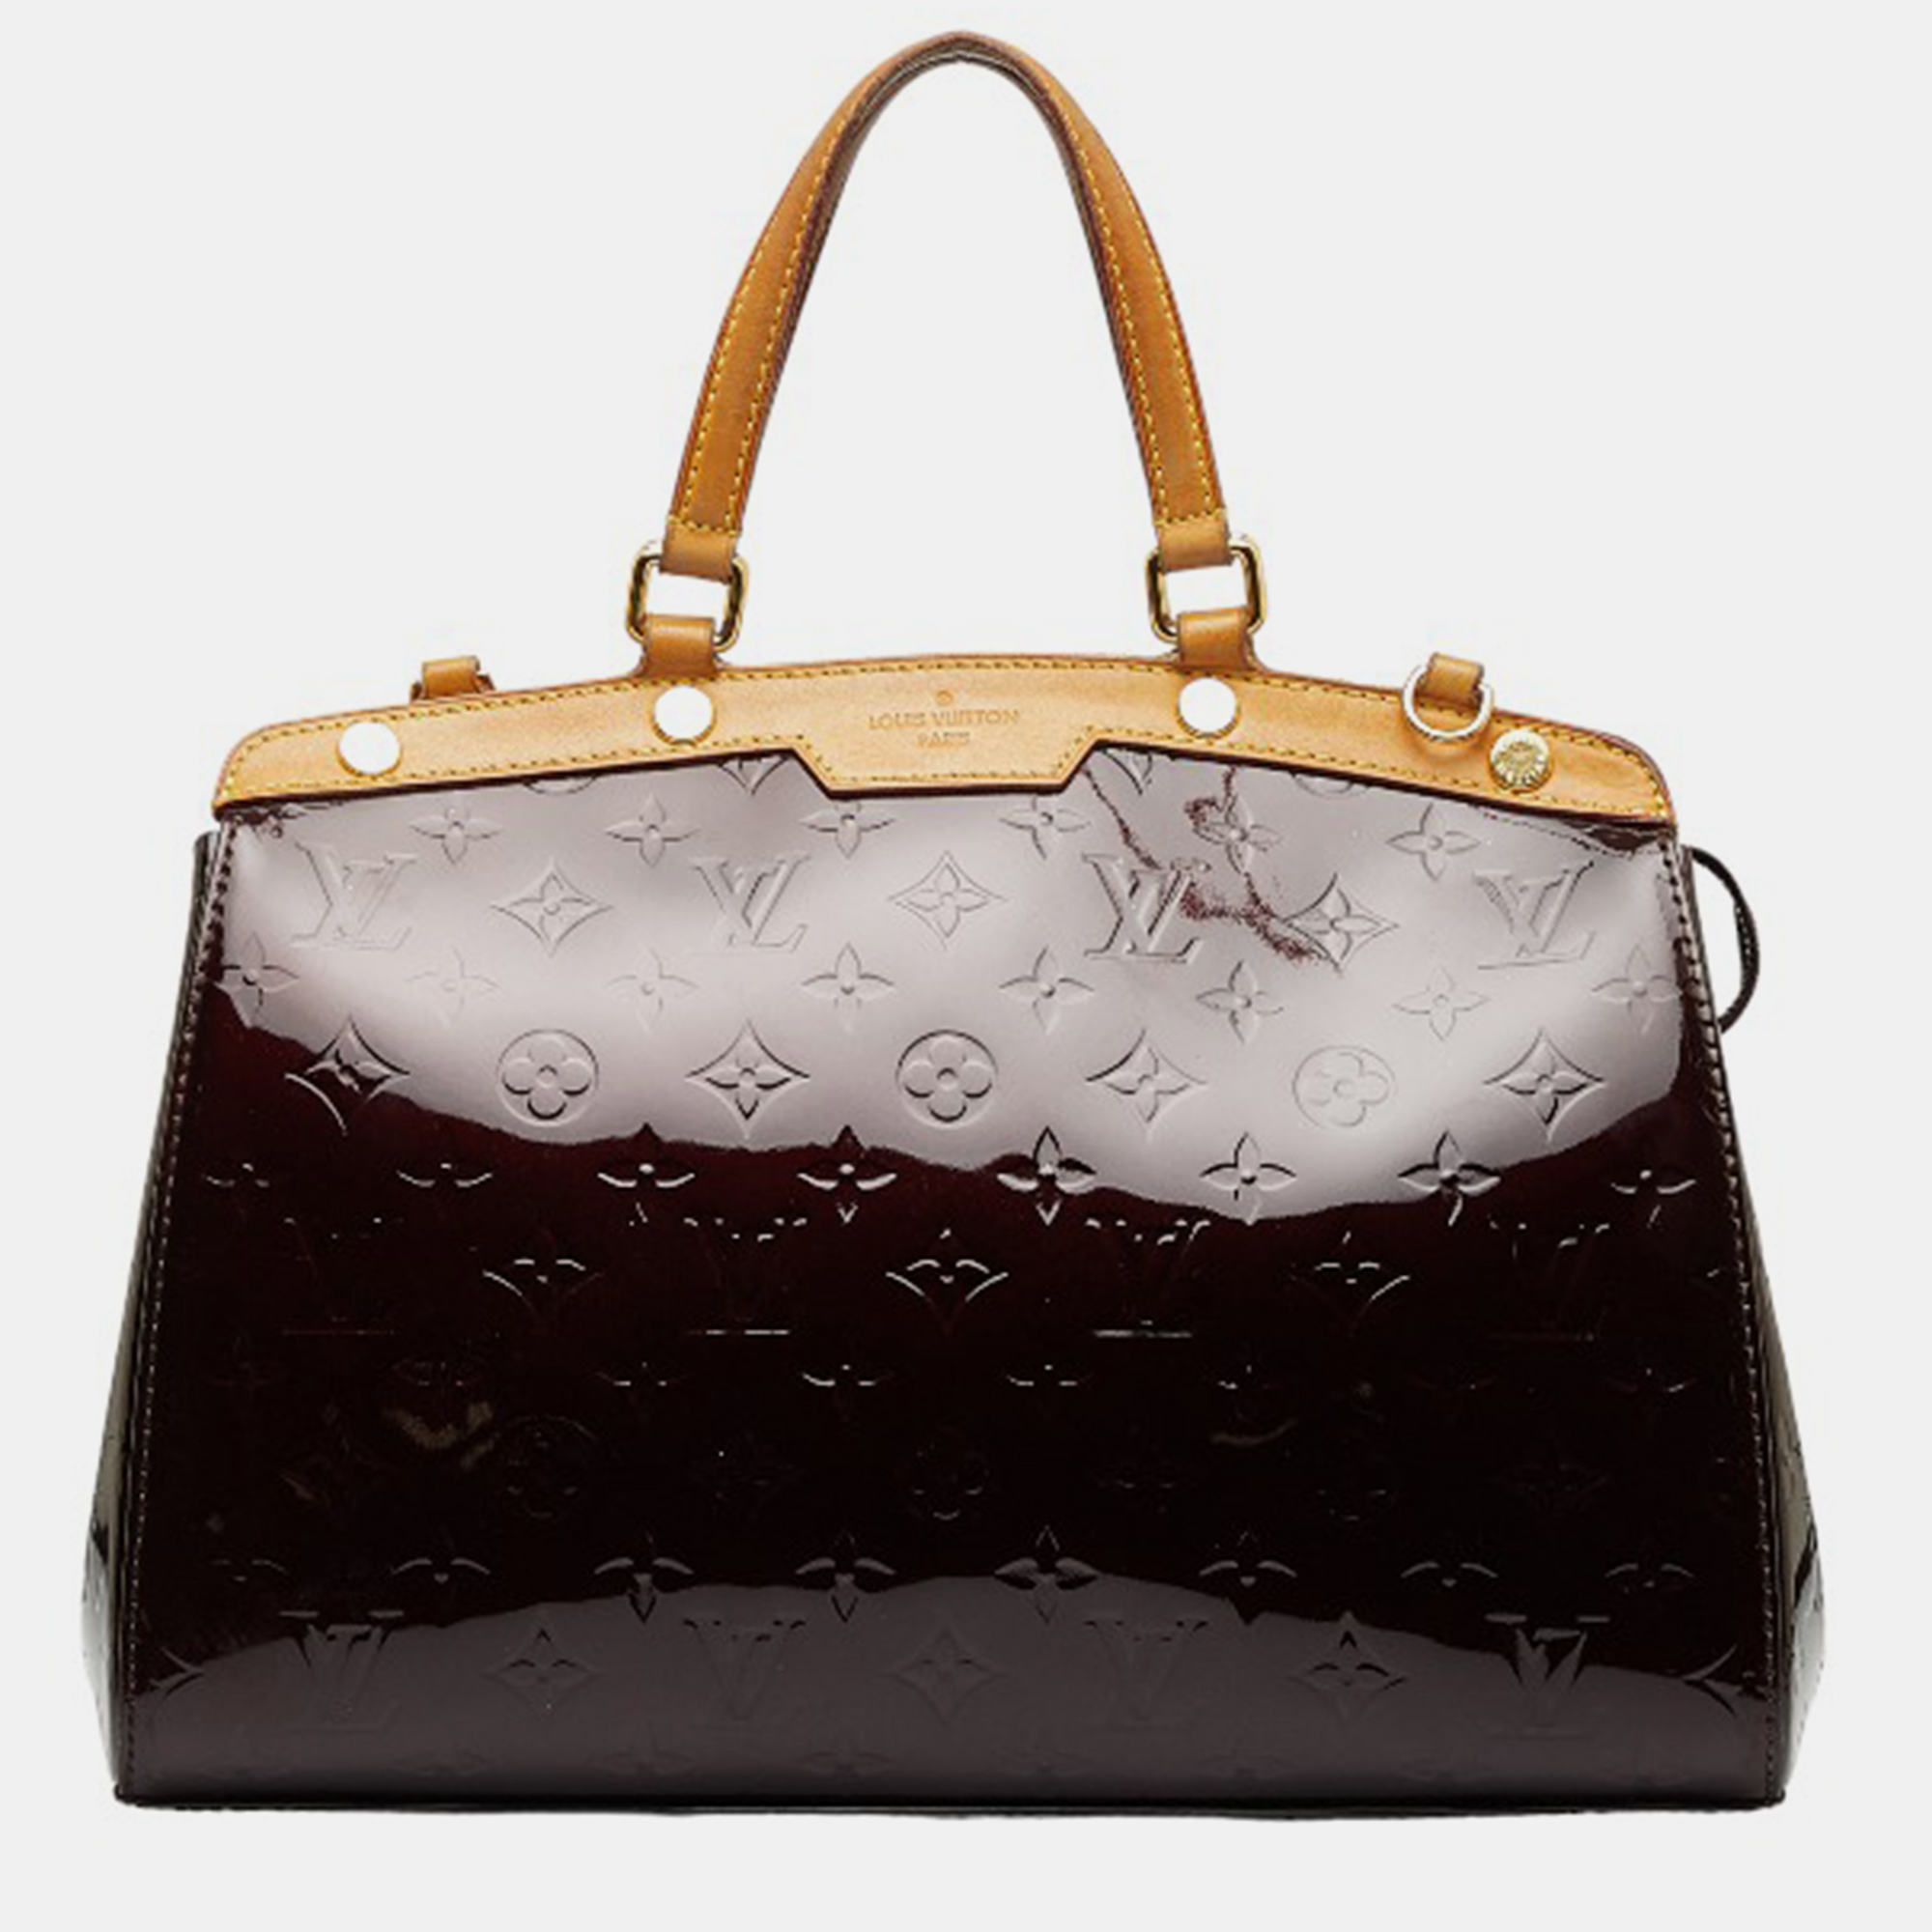 Louis Vuitton Brown/Beige Patent Leather MM Brea Satchel Bag